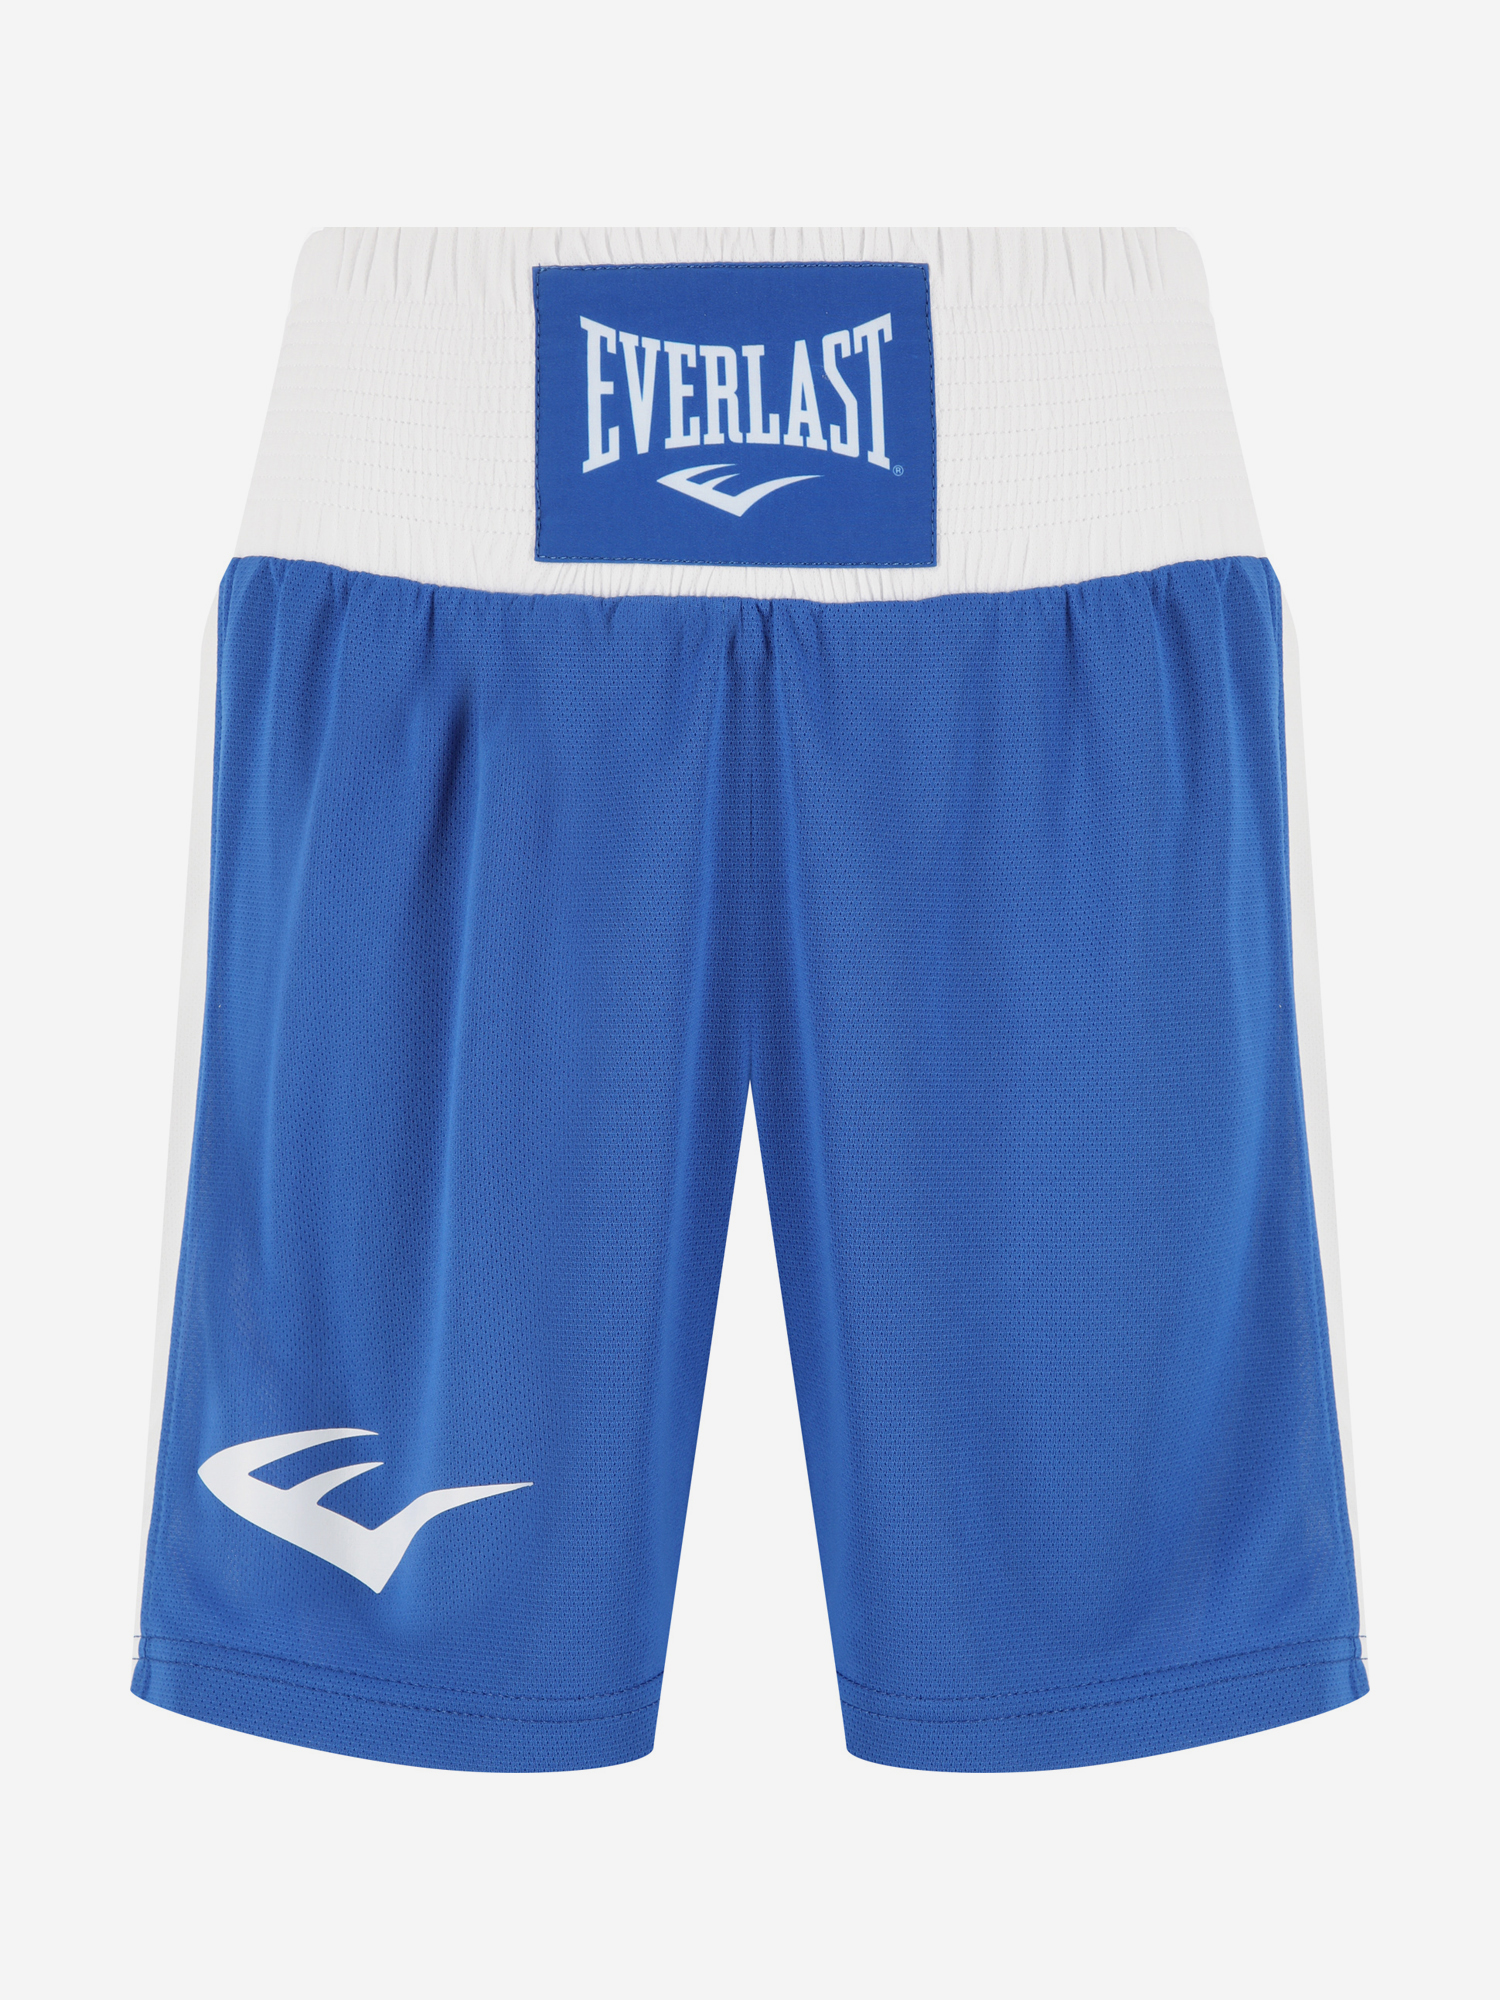 Шорты для бокса Everlast Shorts Elite, Синий